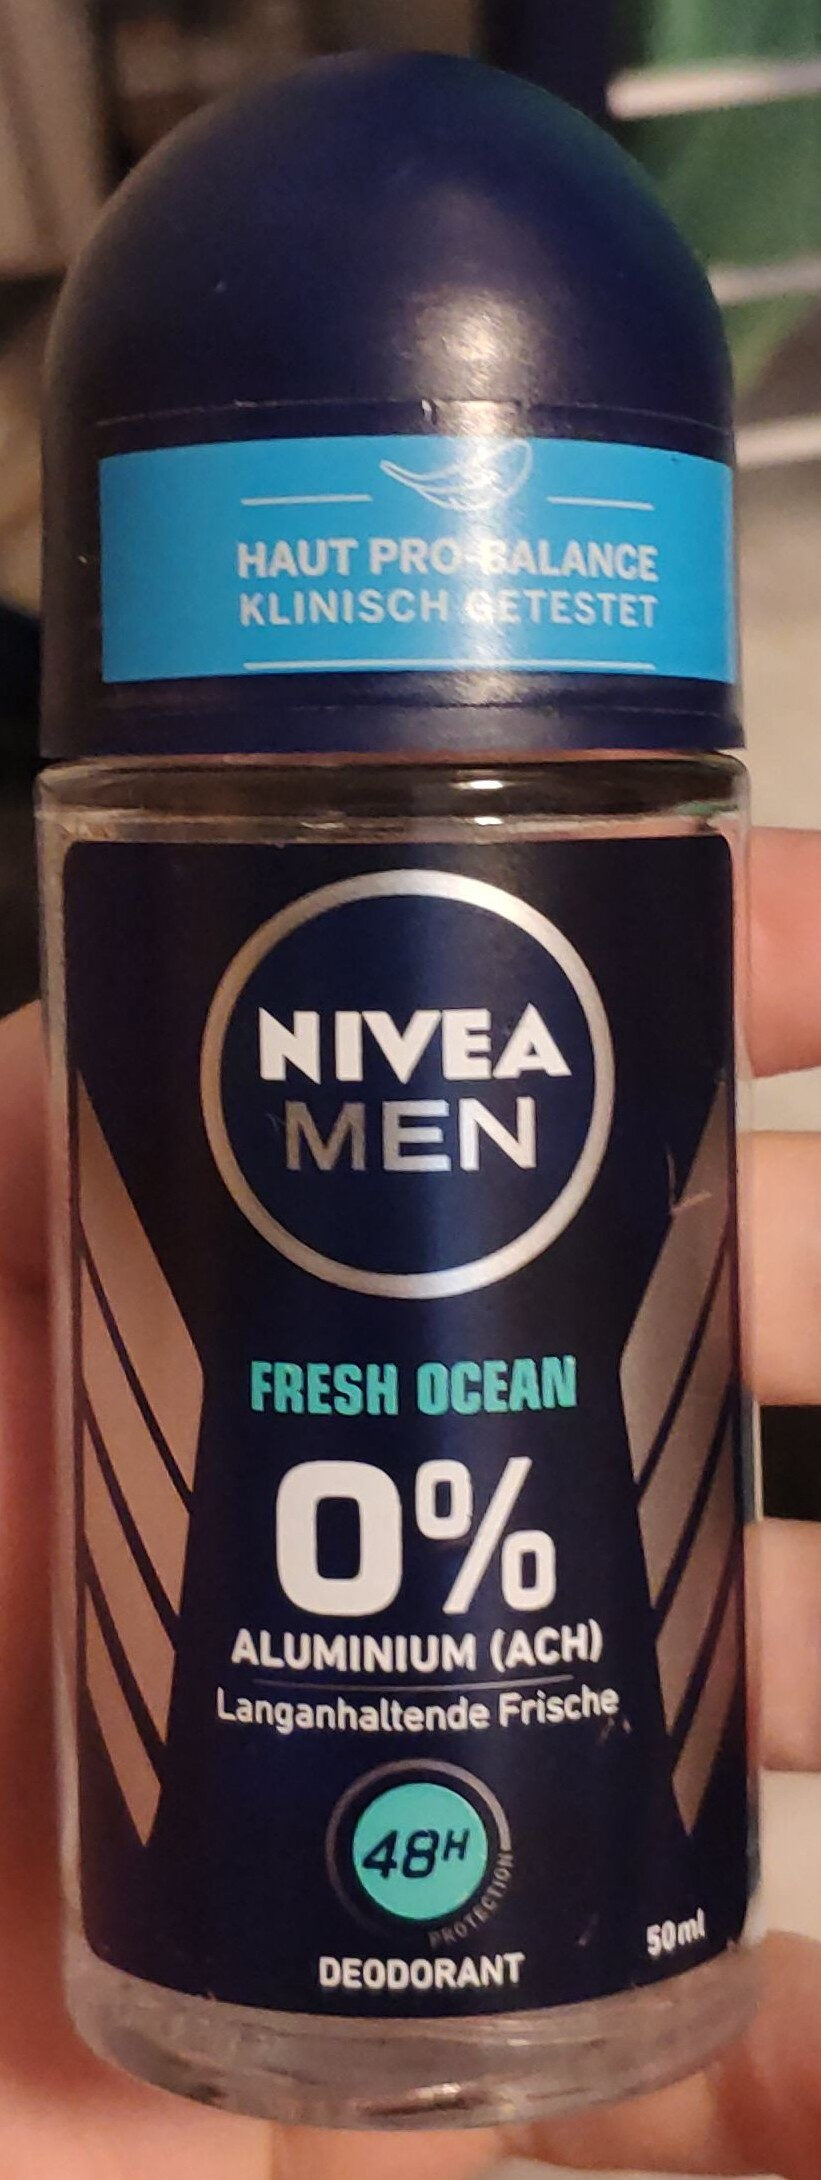 Fresh Ocean - Product - en